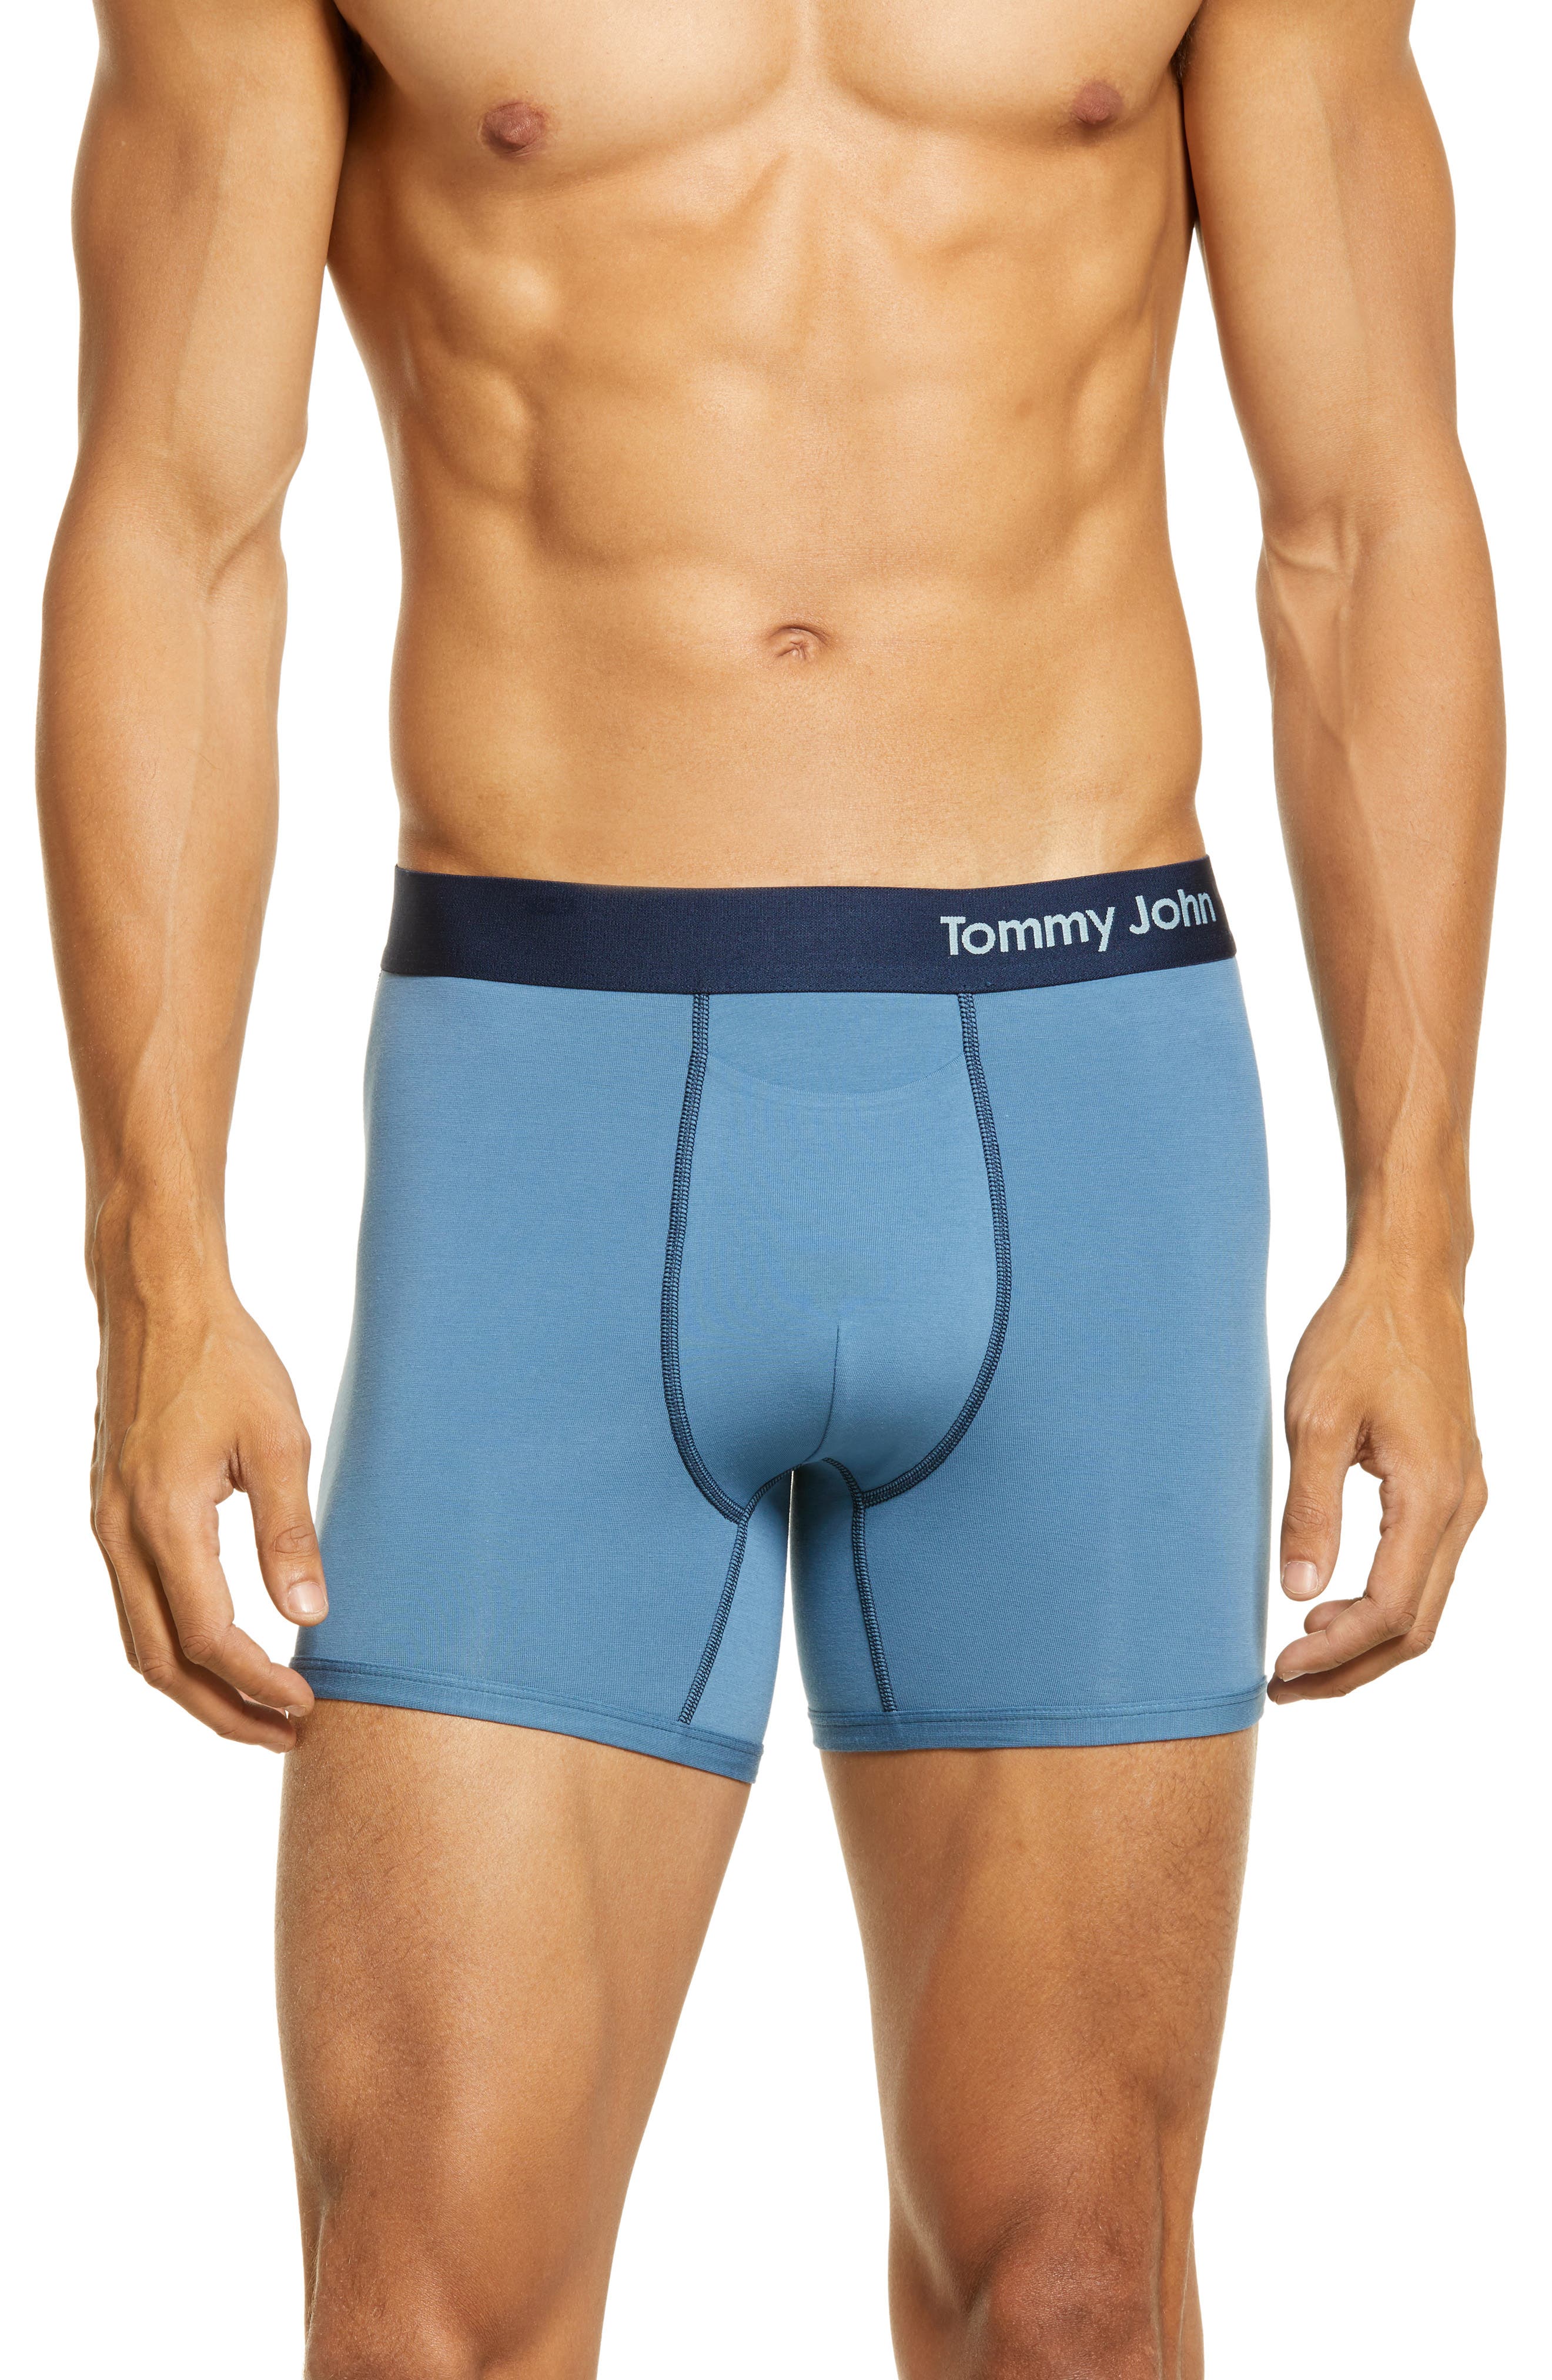 tommy john underwear kohl's